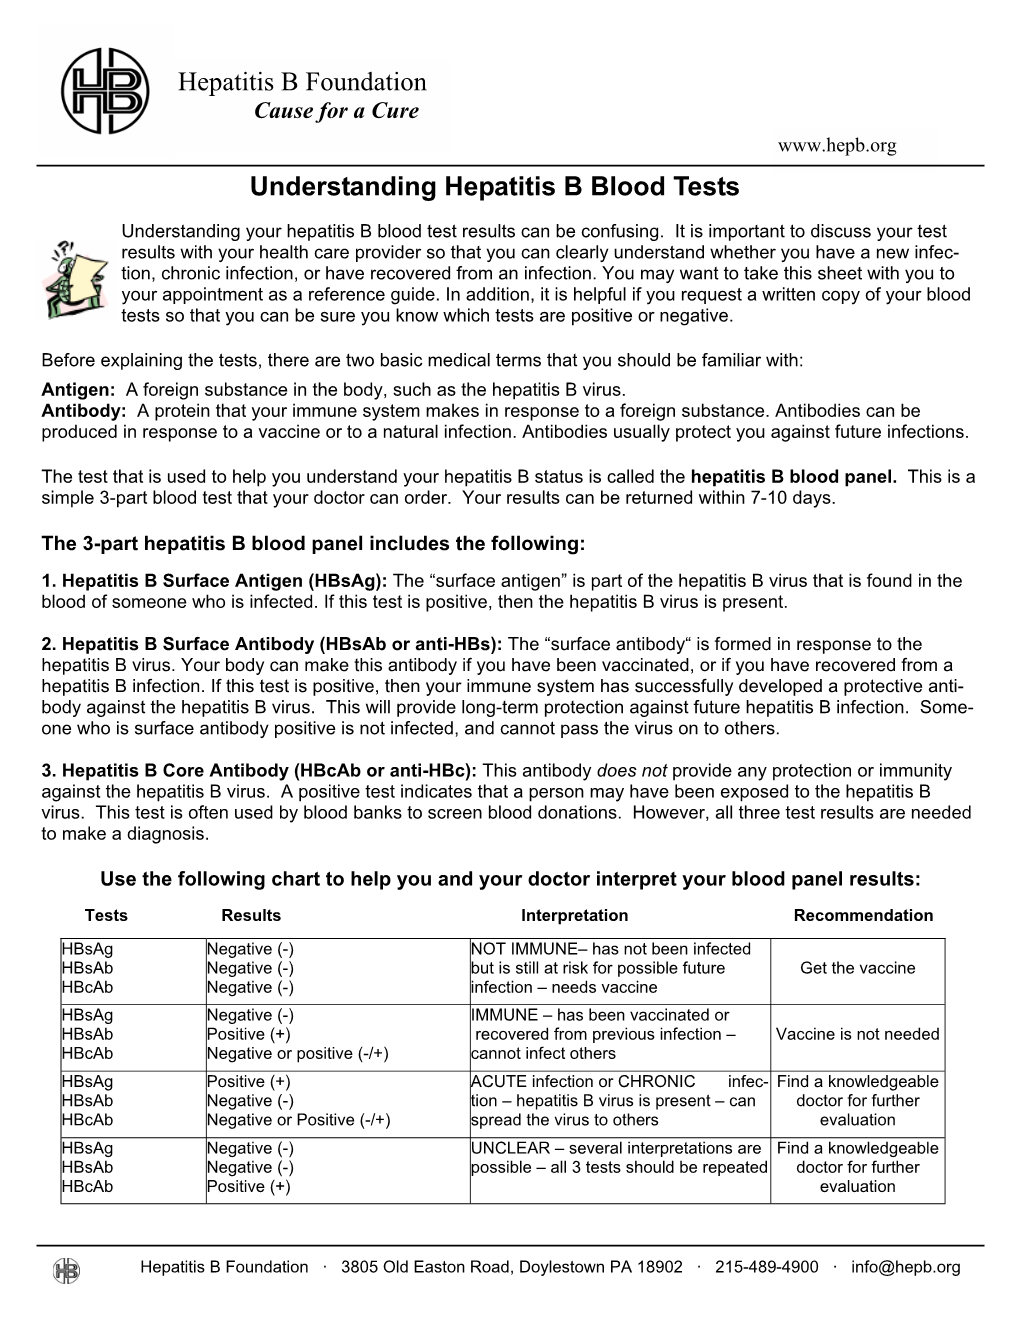 Understanding Hepatitis B Blood Tests Hepatitis B Foundation